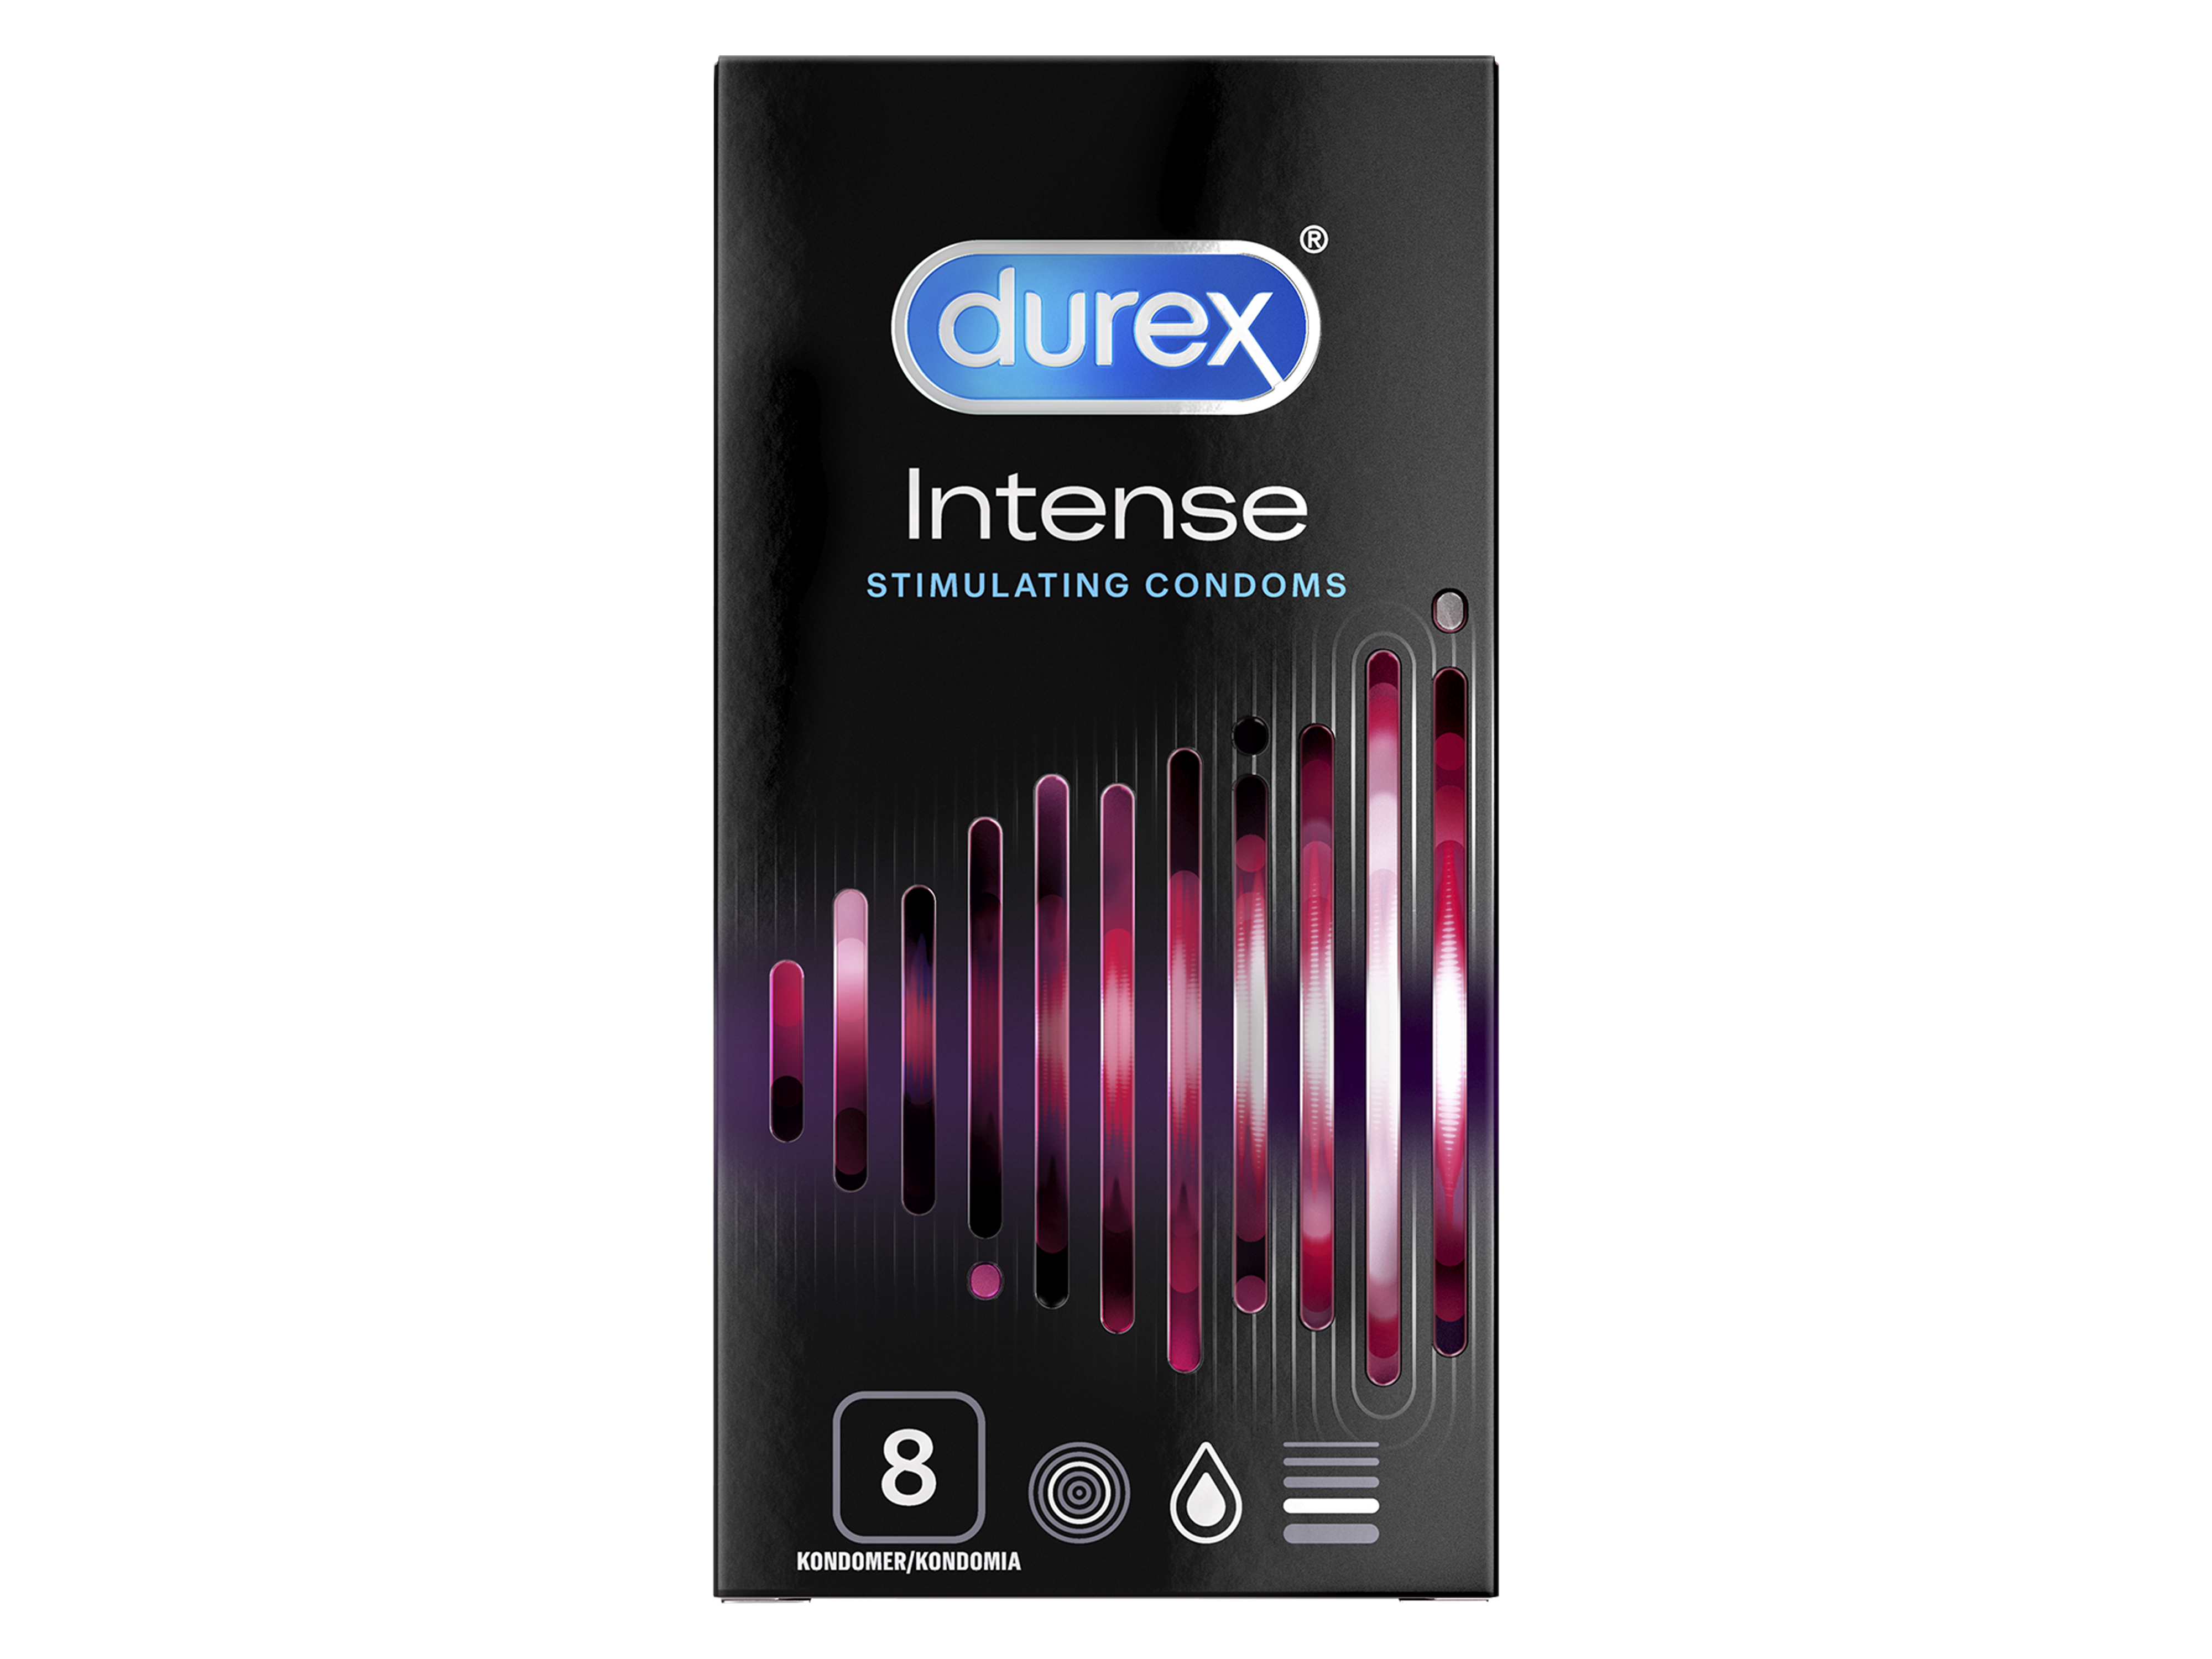 Durex intense kondom, 8 stk.